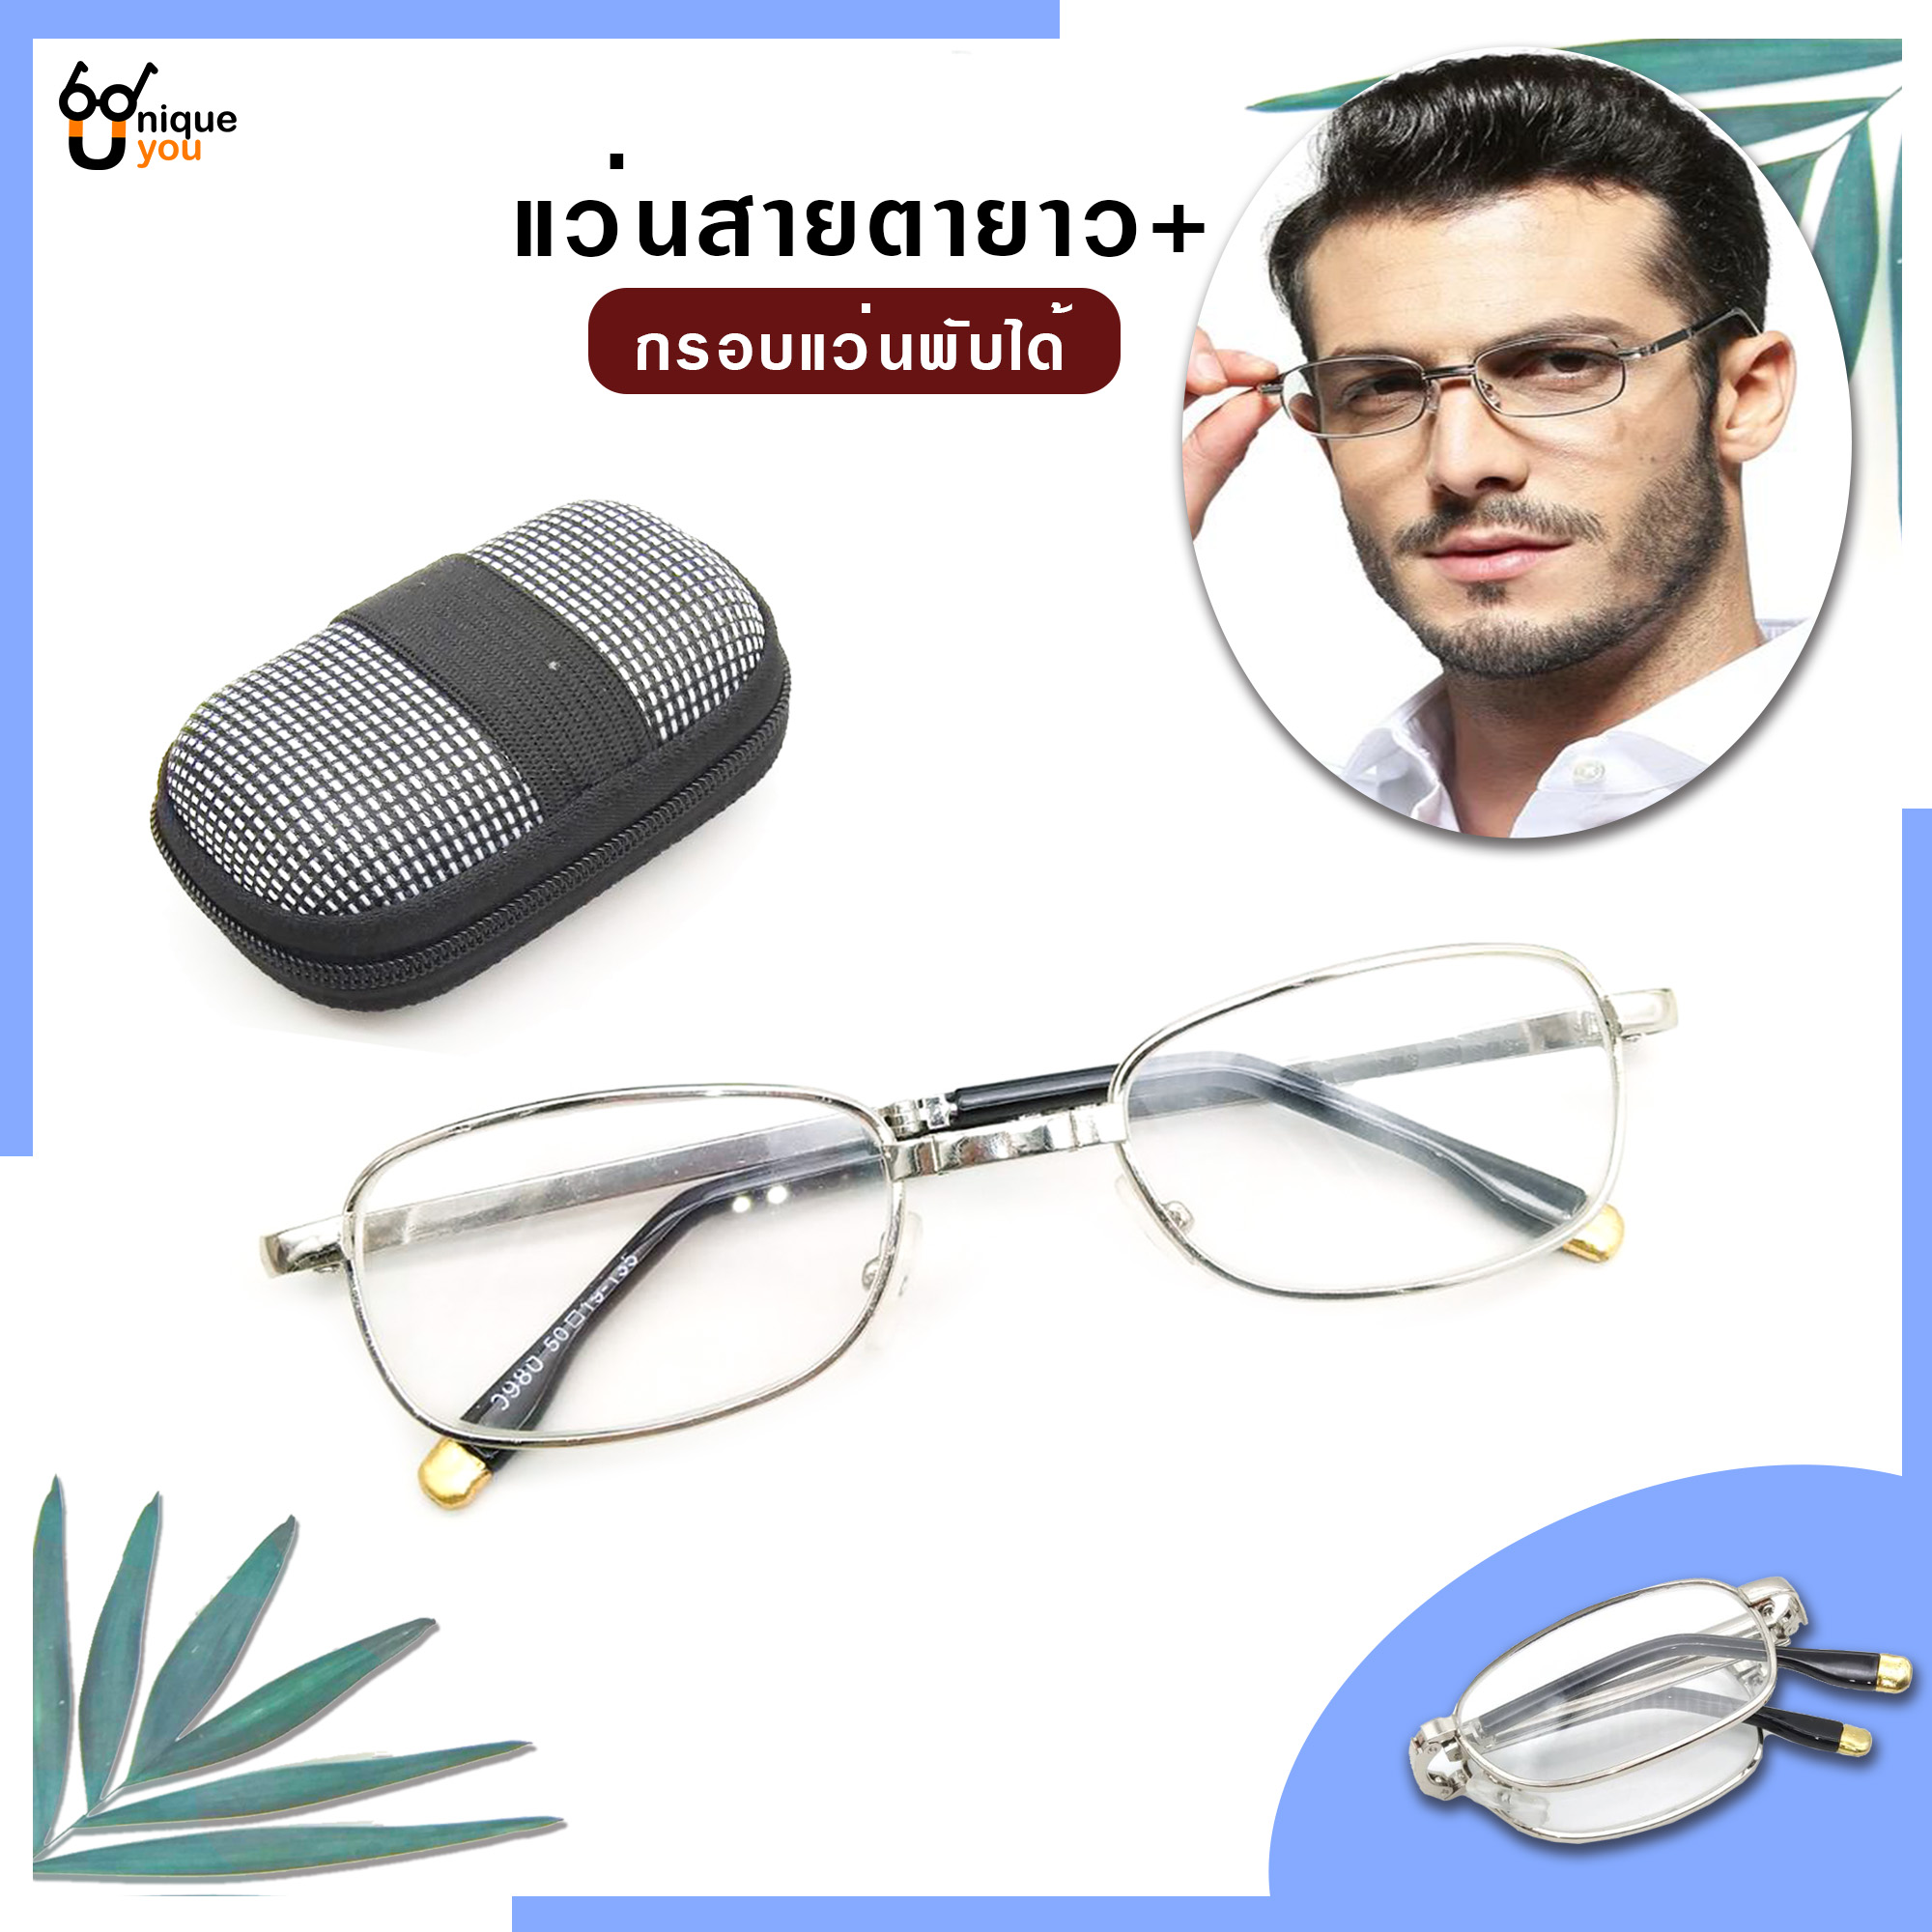 ภาพอธิบายเพิ่มเติมของ Uniq แว่นสายตายยาว พับได้ เลนส์กระจก แว่สายตากรอบแว่นพับได้ แว่นตาพับได้ แว่นสำหรับอ่านหนังสือ แว่นผู้สูงอายุ แว่นสายตาสำหรับอ่านหนอ